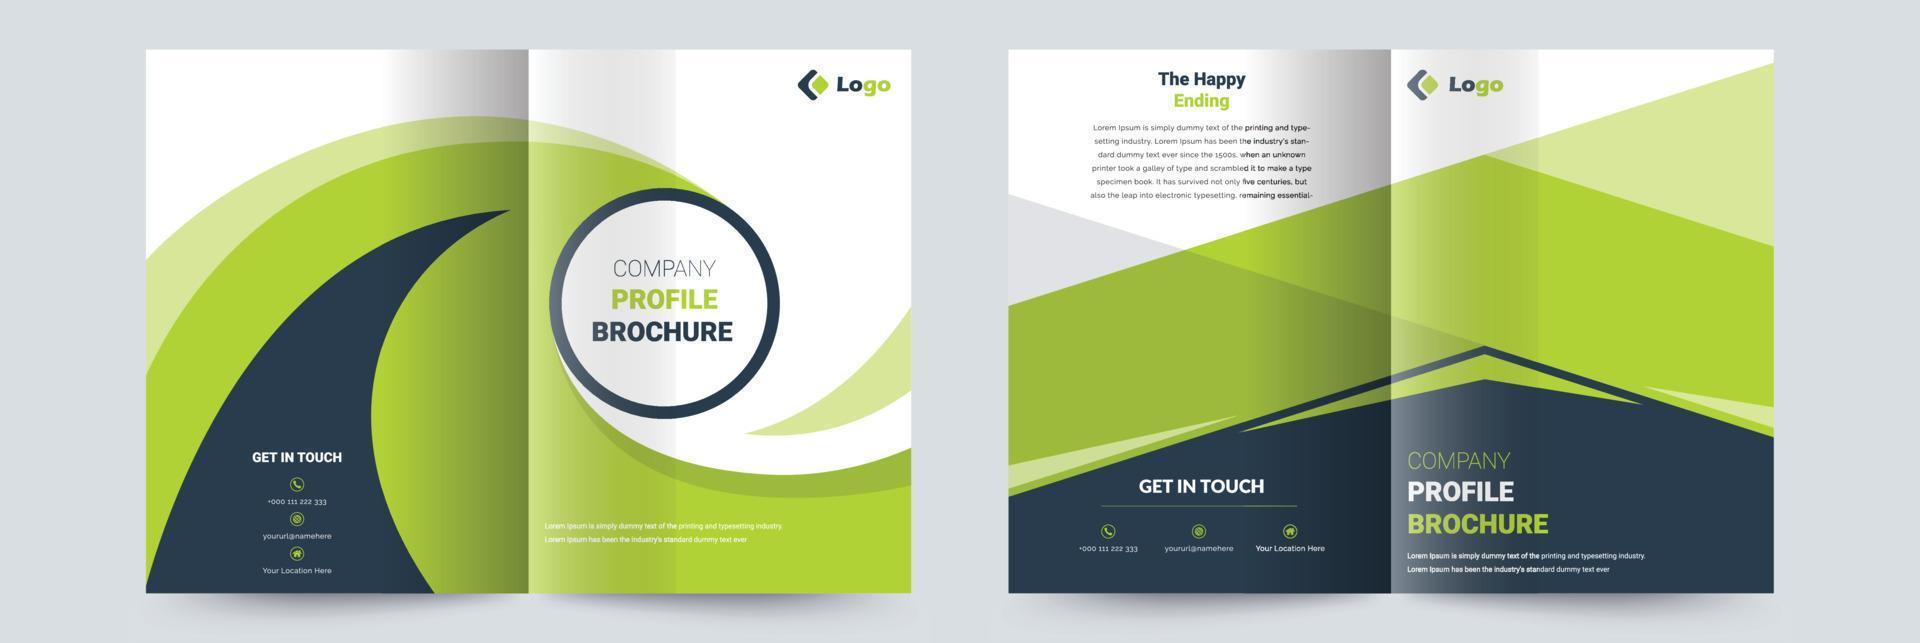 företagsprofil corporate business broschyr designmall vektor